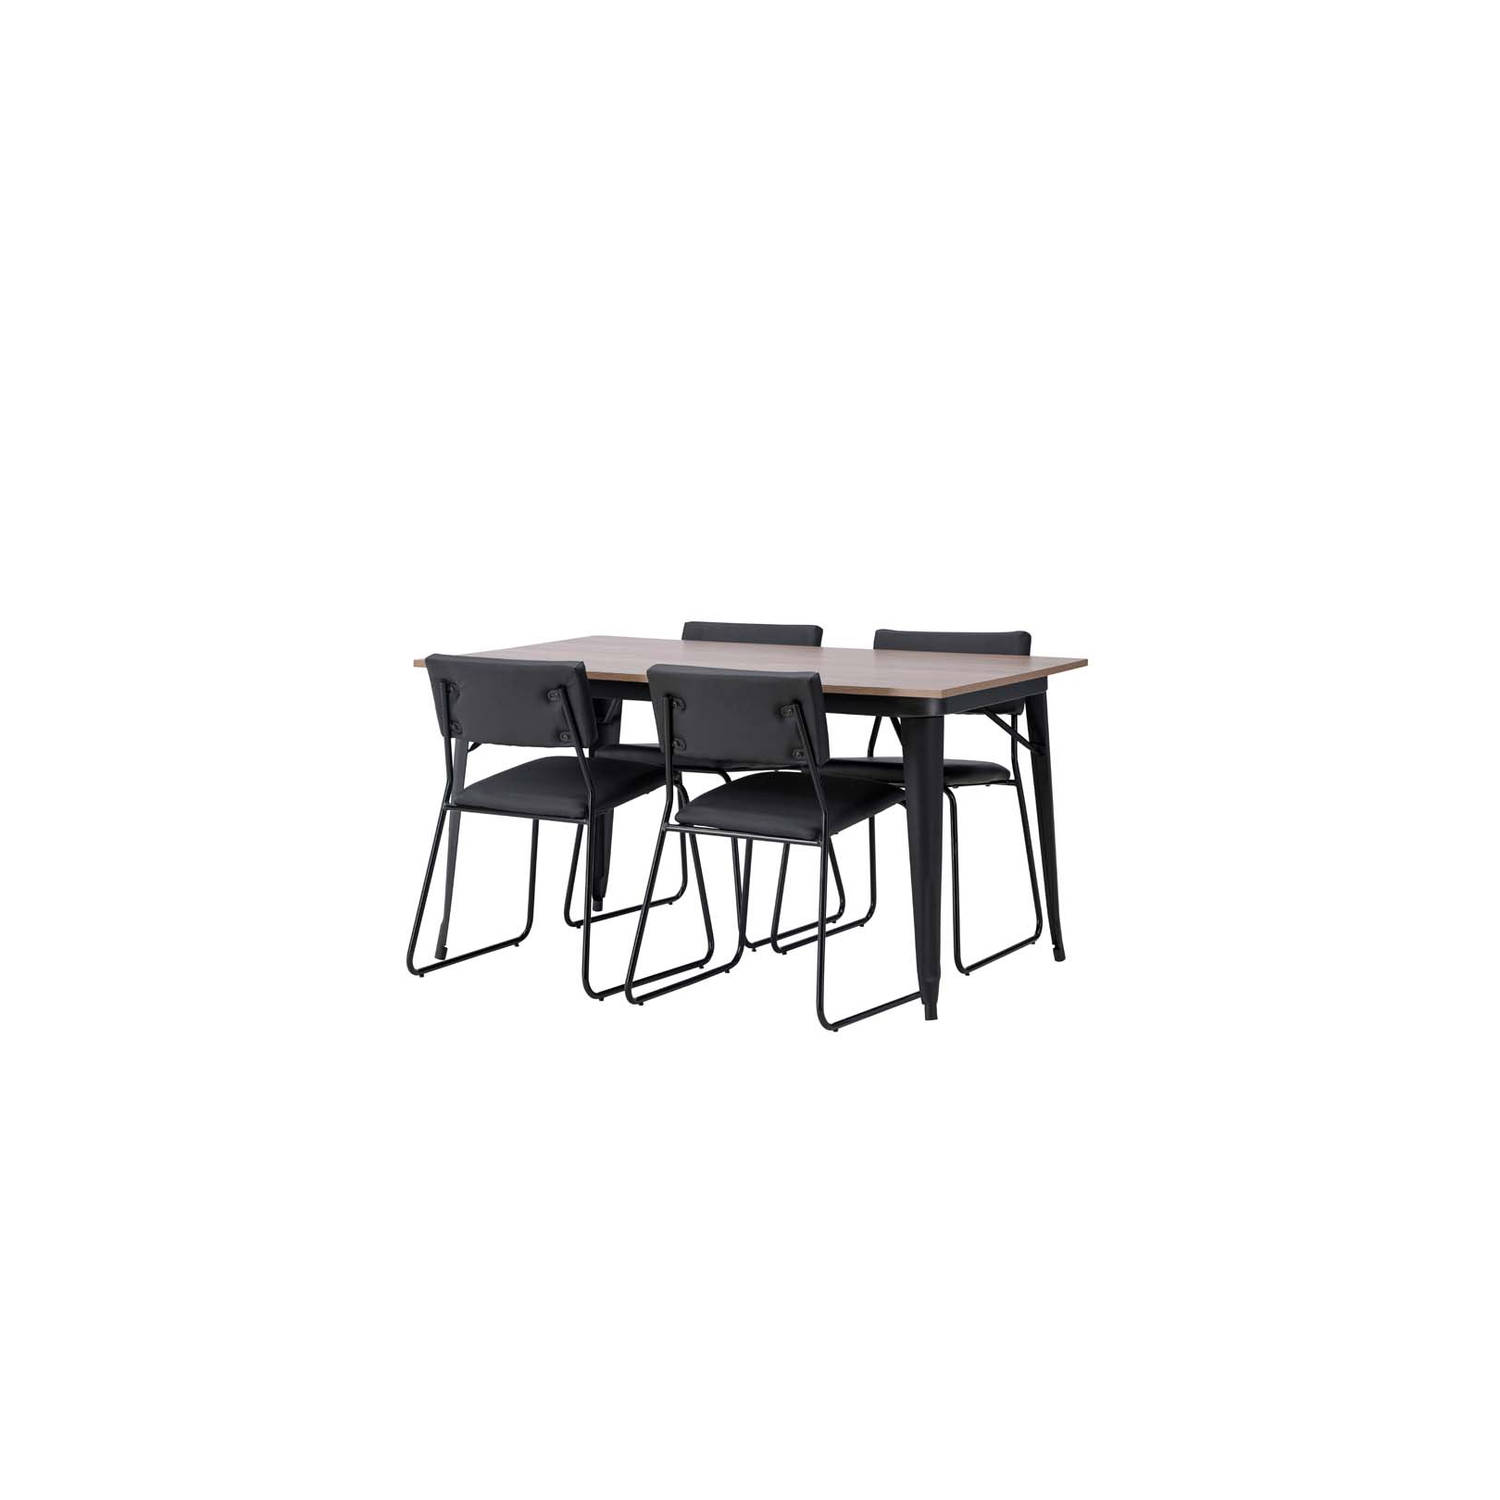 Tempe eethoek tafel okkernoot decor en 4 Kenth stoelen zwart.